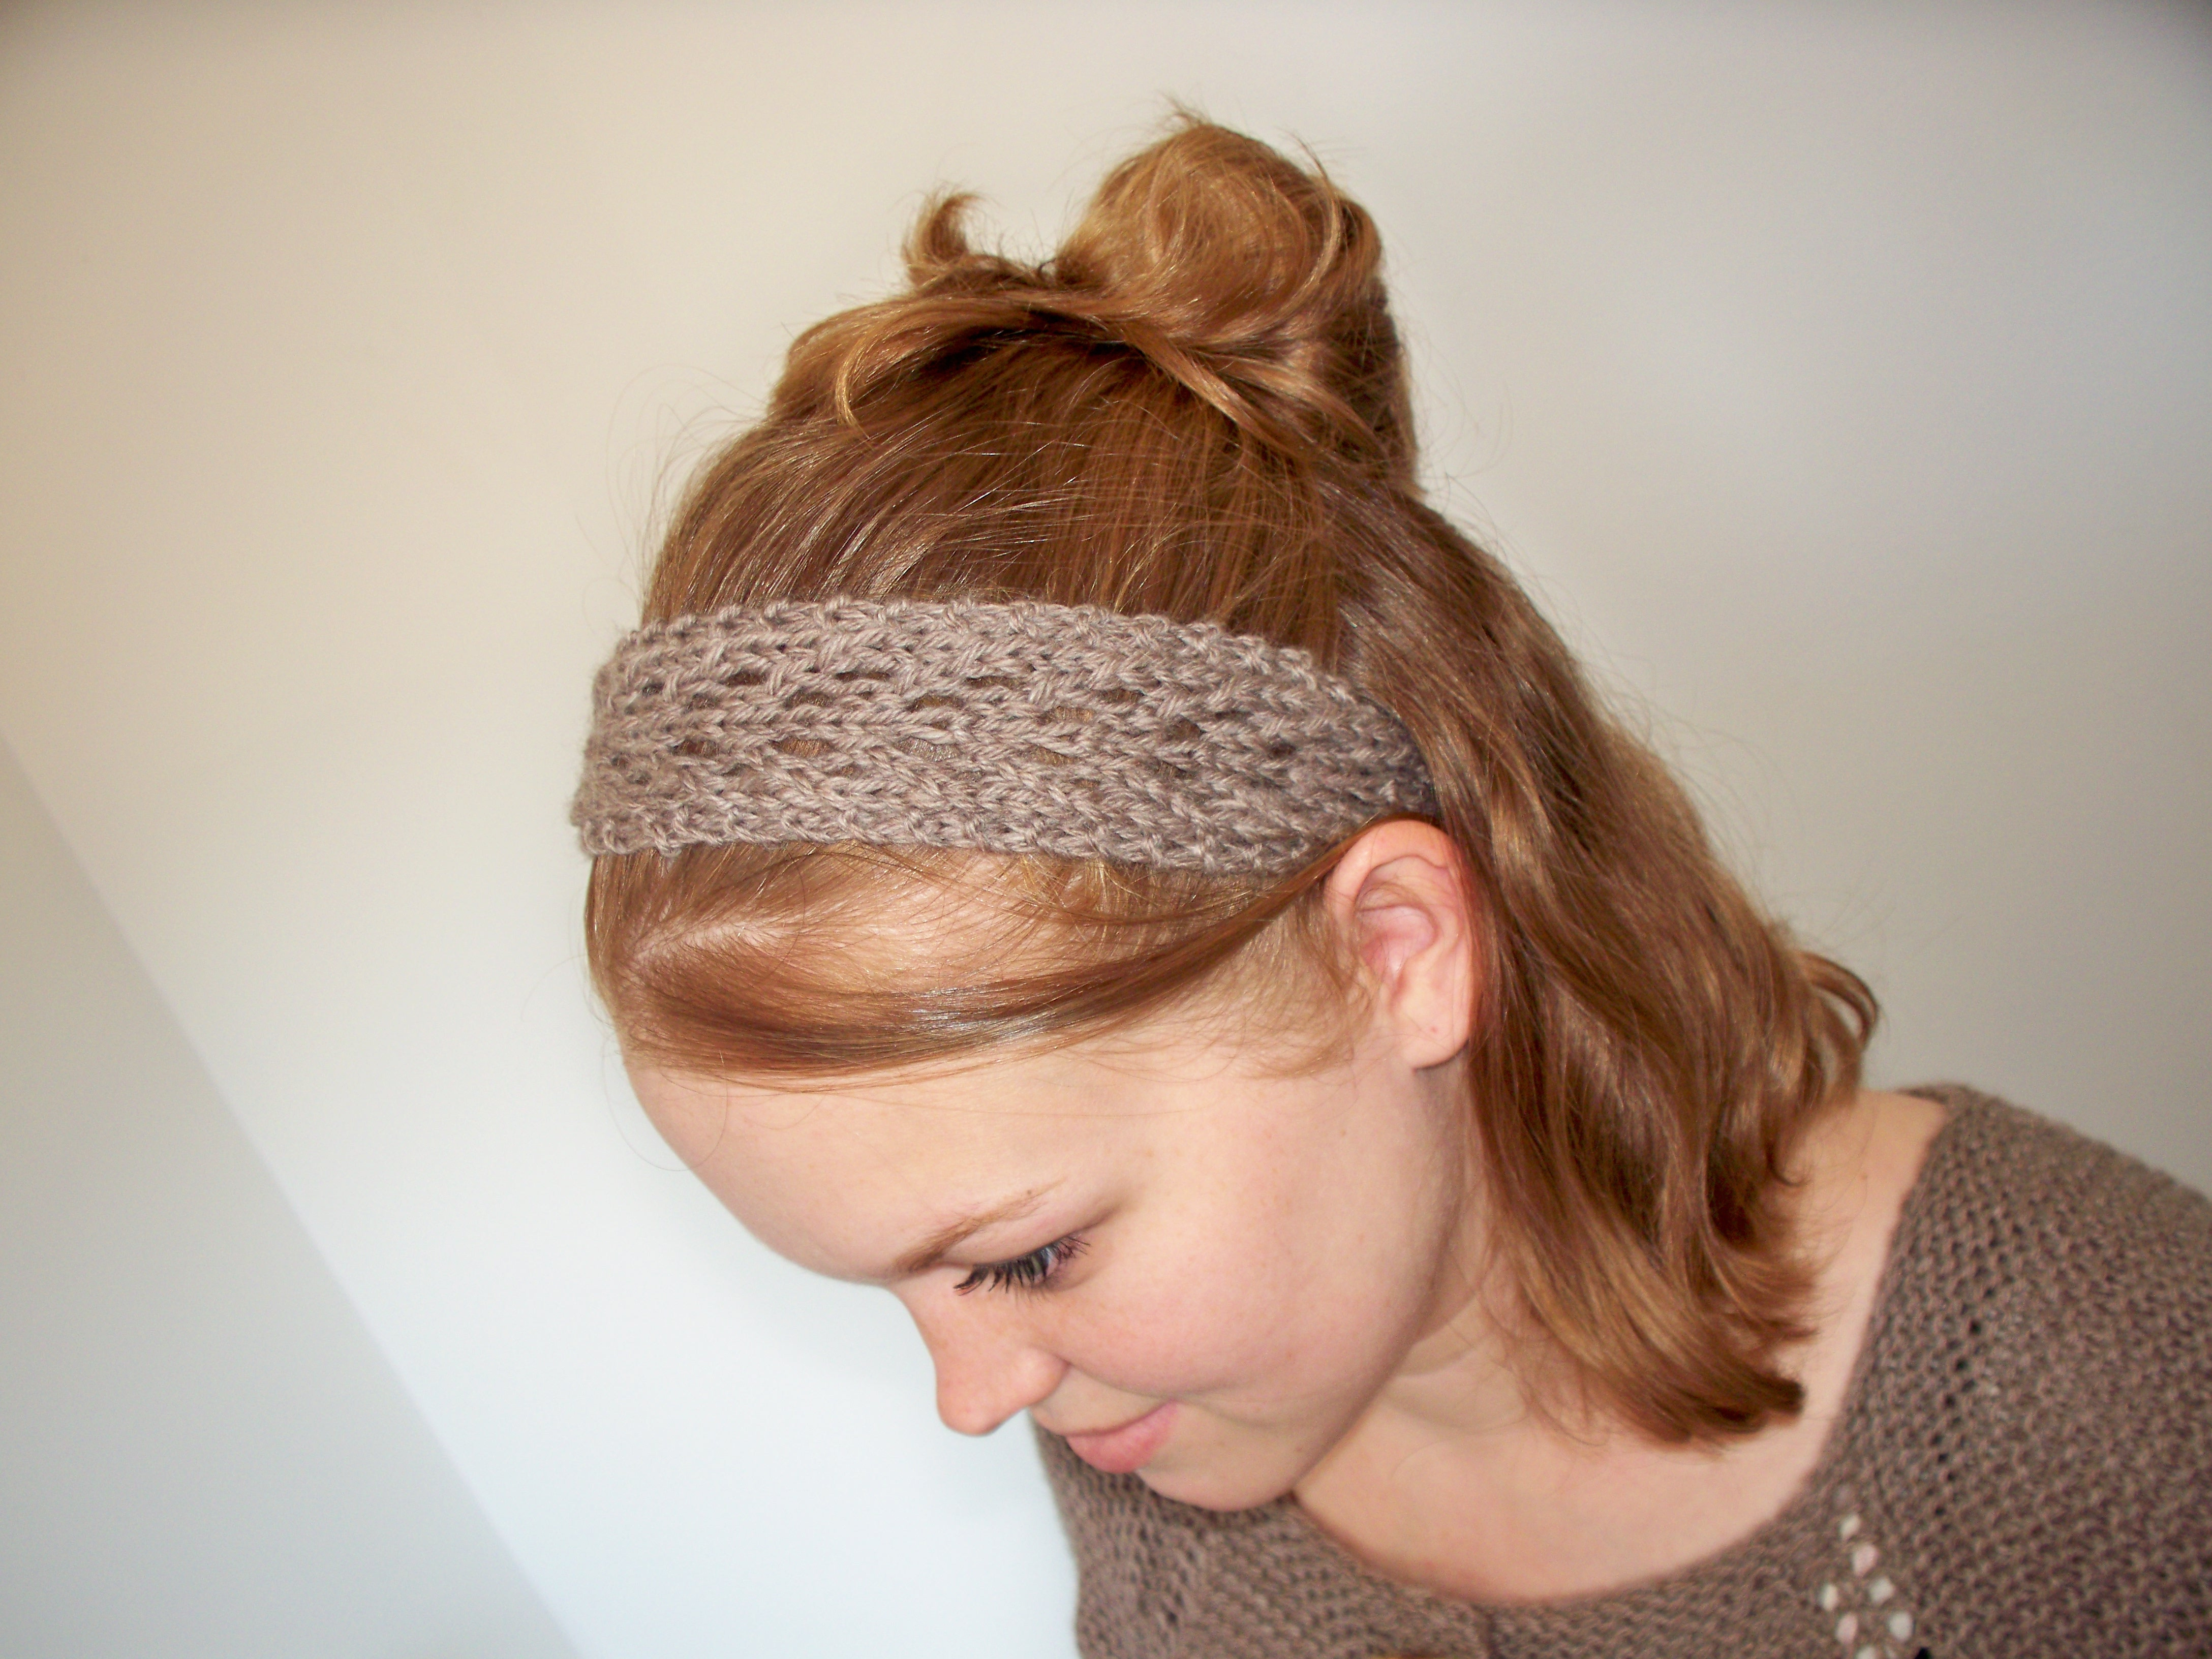 Knitting Headband Pattern Free February Lady Lace Headband Pretty Little Knit Stitches